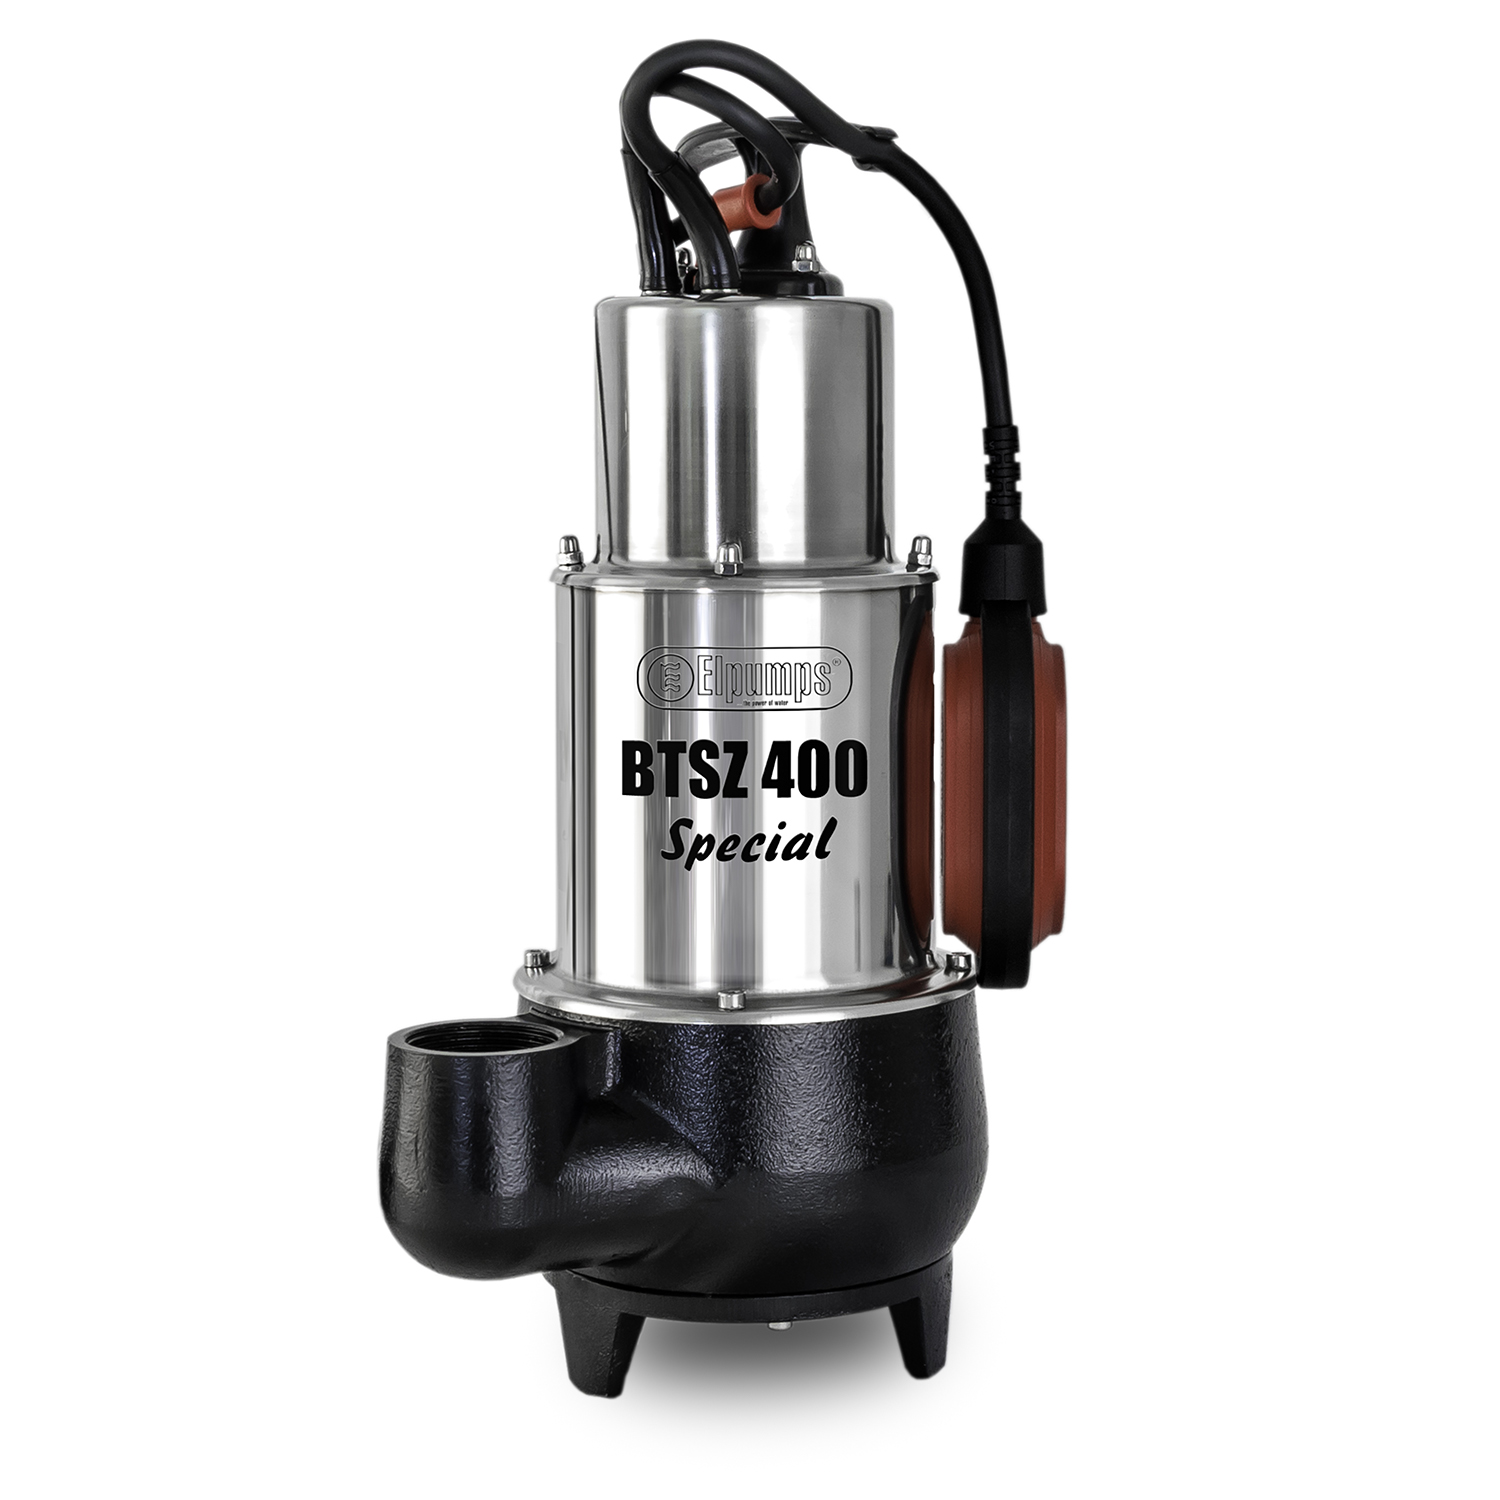 BTSZ 400 SPECIAL Pompa do wody brudnej, 1200 W, 24.000 l/h